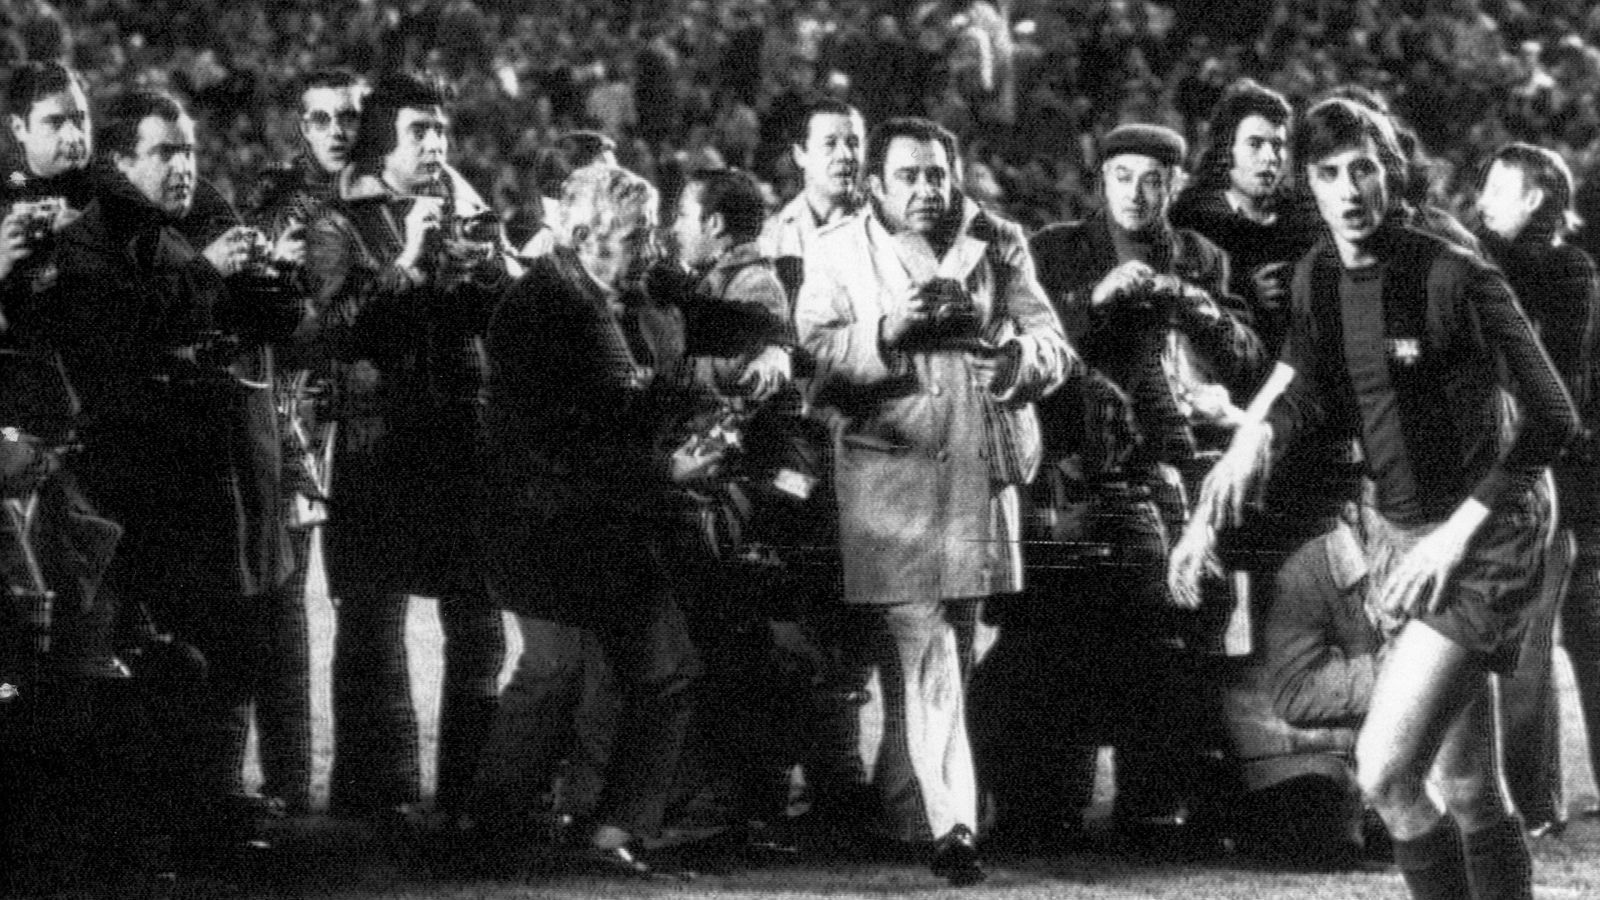 <strong>1974: Cruyff führt Barca zu legendärem Auswärtssieg </strong><br>Ein weiterer Meilenstein der Rivalität ist der 5:0-Sieg Barcelonas in Madrid 1974 mit dem damals neu verpflichteten Johan Cruyff (Foto), der eine neue Ära der Katalanen einleitete.
